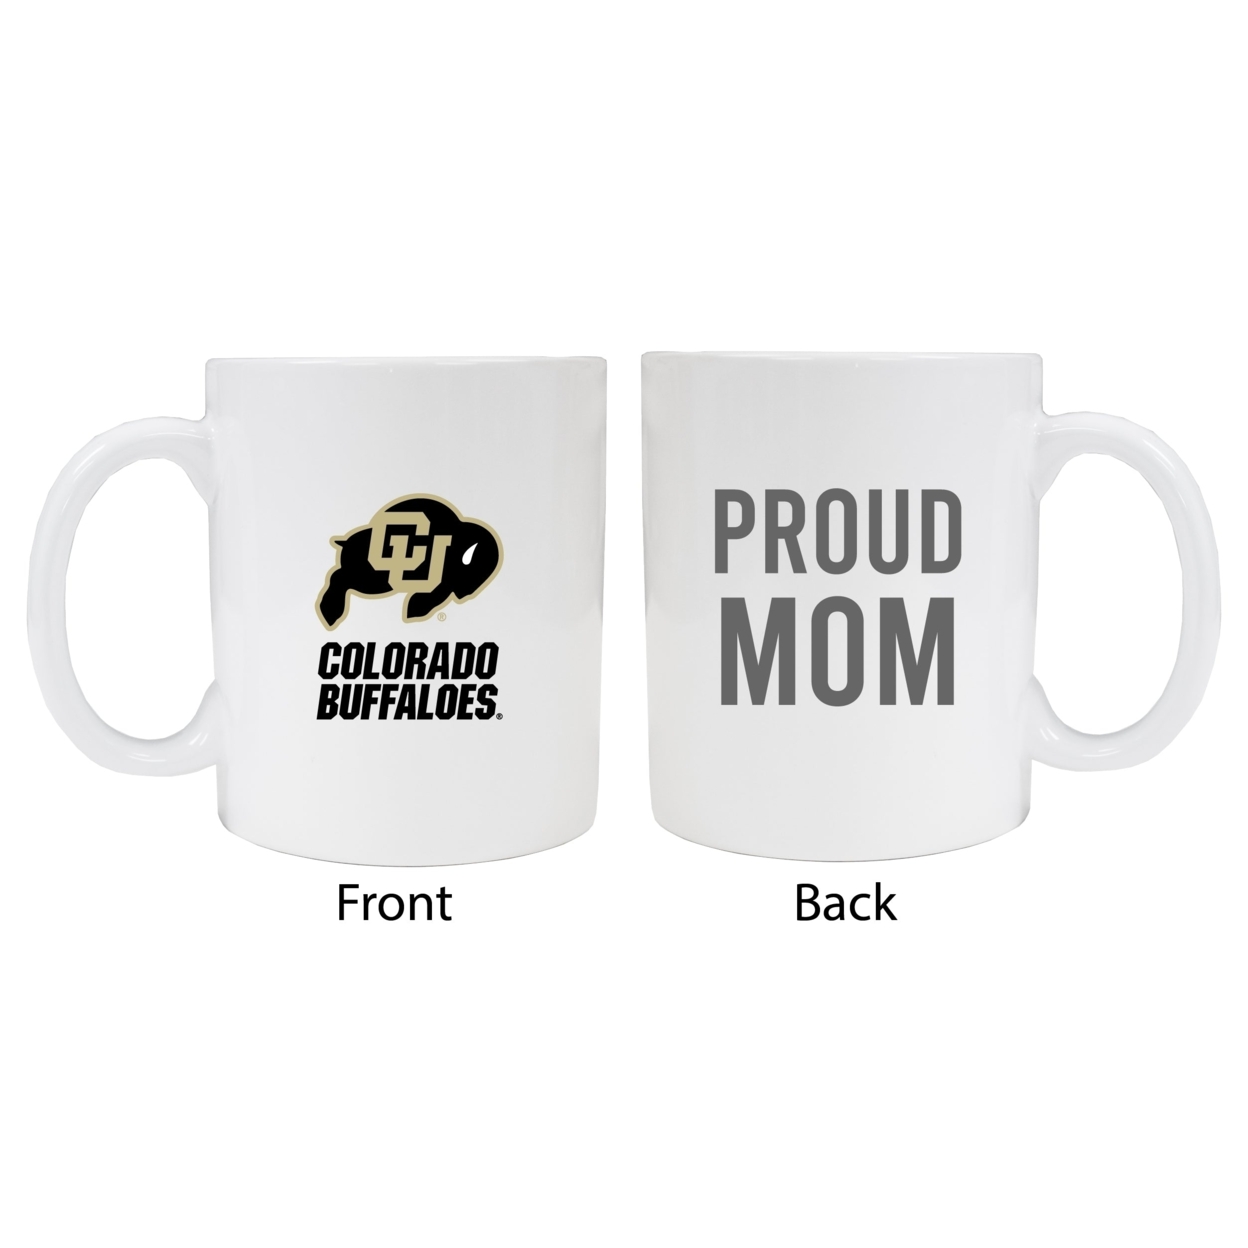 Colorado Buffaloes Proud Mom White Ceramic Coffee Mug - White (2 Pack)